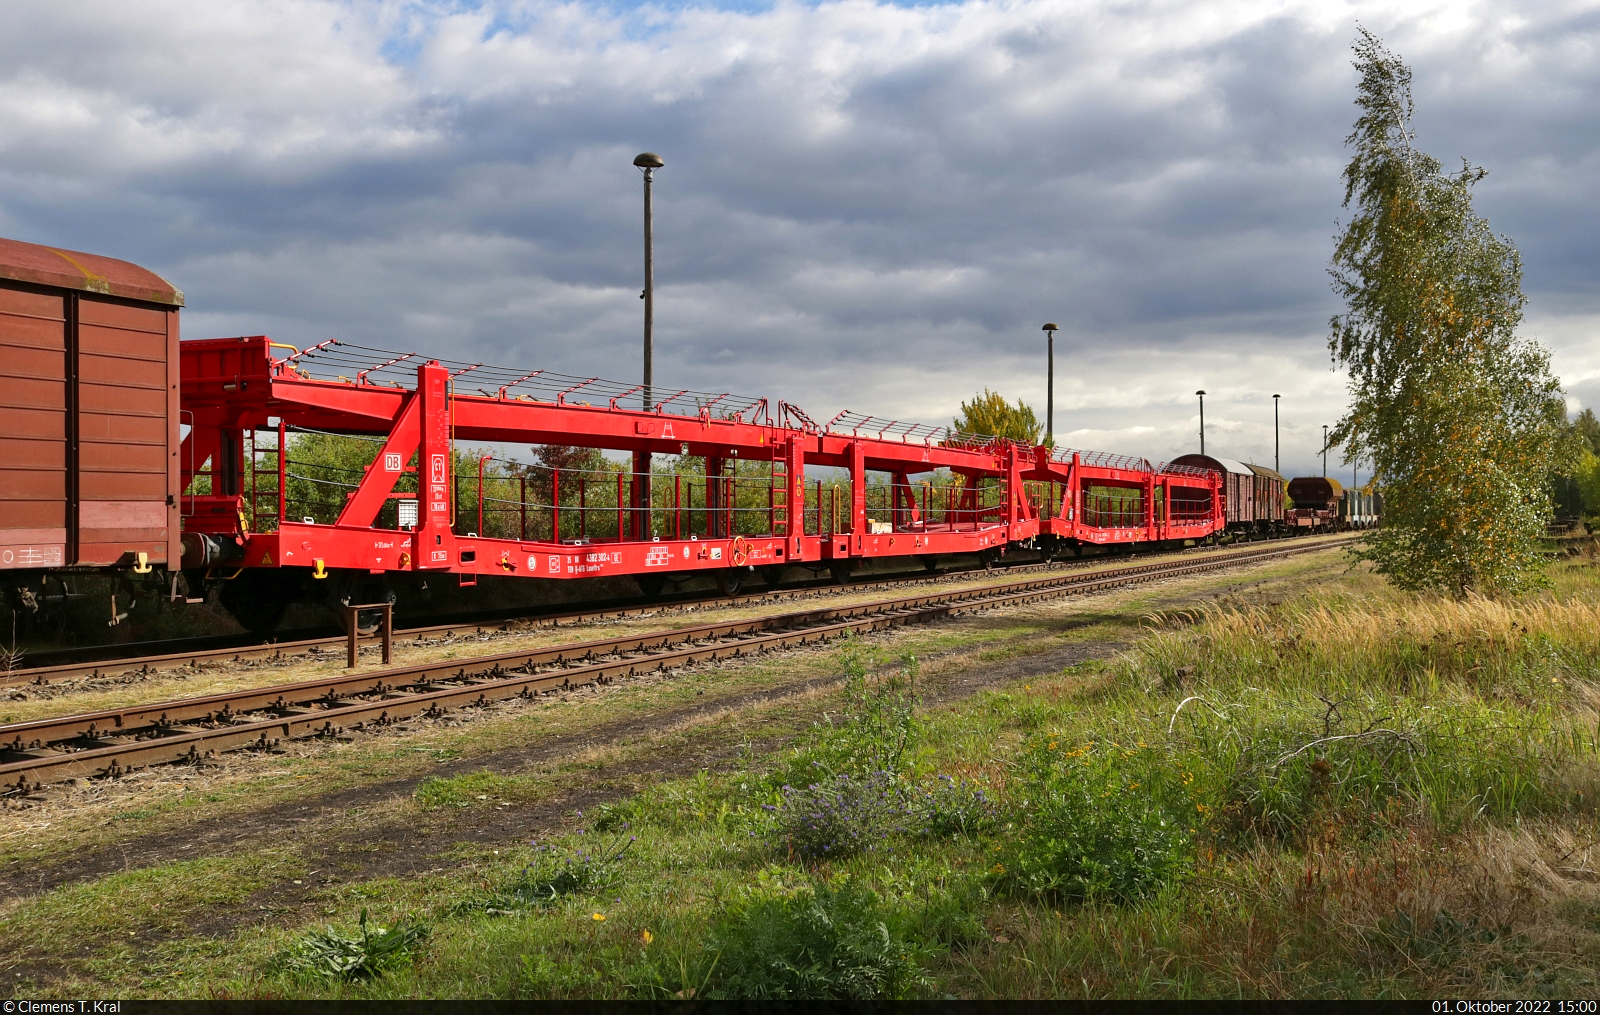 Historisches Eisenbahnwochenende Benndorf–Staßfurt

Abgestellt am Lokschuppen Staßfurt waren u.a. zwei Autotransportwagen mit der Bezeichnung  Laaeffrs <sup>560.4</sup>  (25 80 4382 302-4 D-ATG | 25 80 4382 304-0 D-ATG).

🧰 DB Schenker Rail Automotive GmbH
🕓 1.10.2022 | 15:00 Uhr